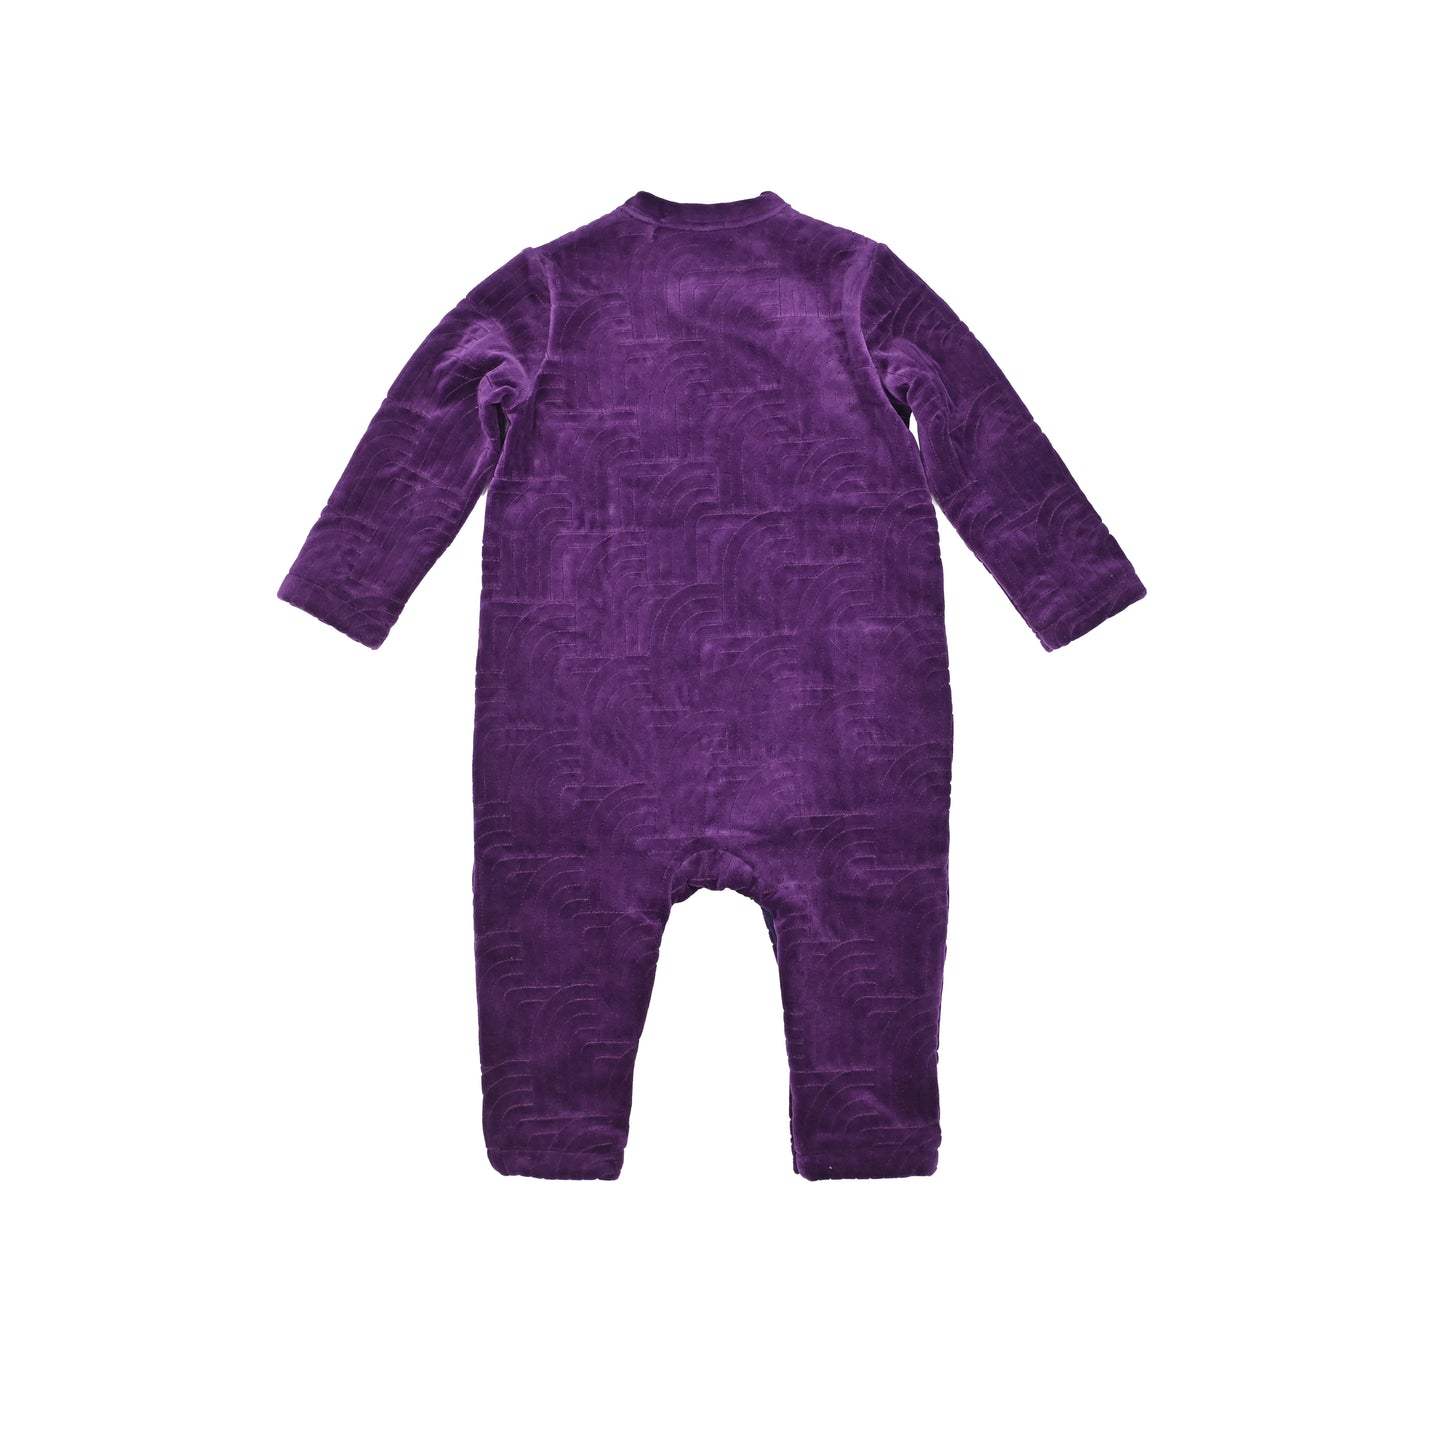 嬰兒衣服 - 絲絨彩虹刺繡側扣連身衣